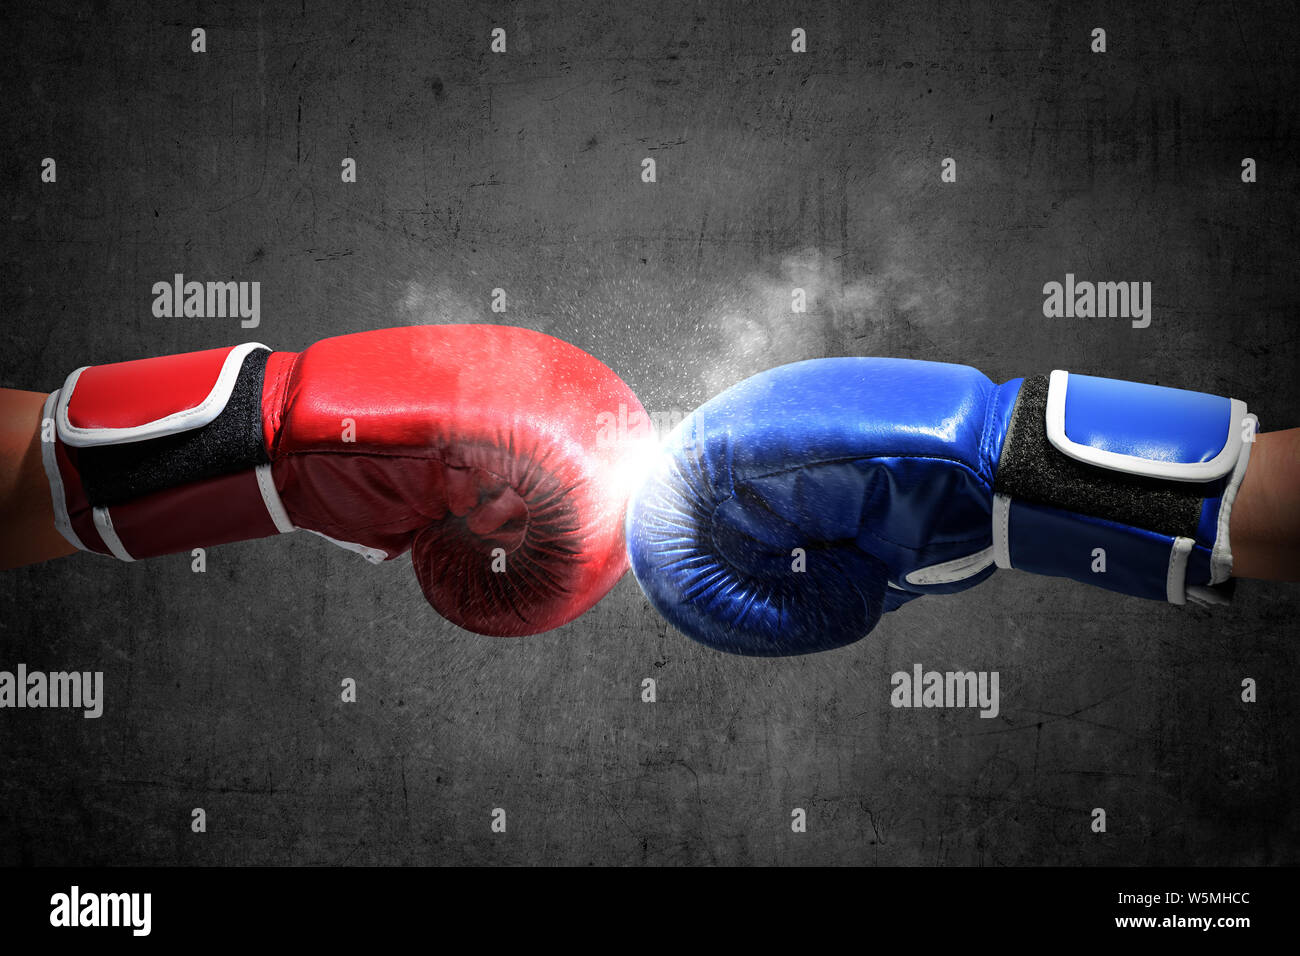 Los guantes de boxeo rojos golpean una pera los guantes de boxeo golpean  una pared con un fondo negro